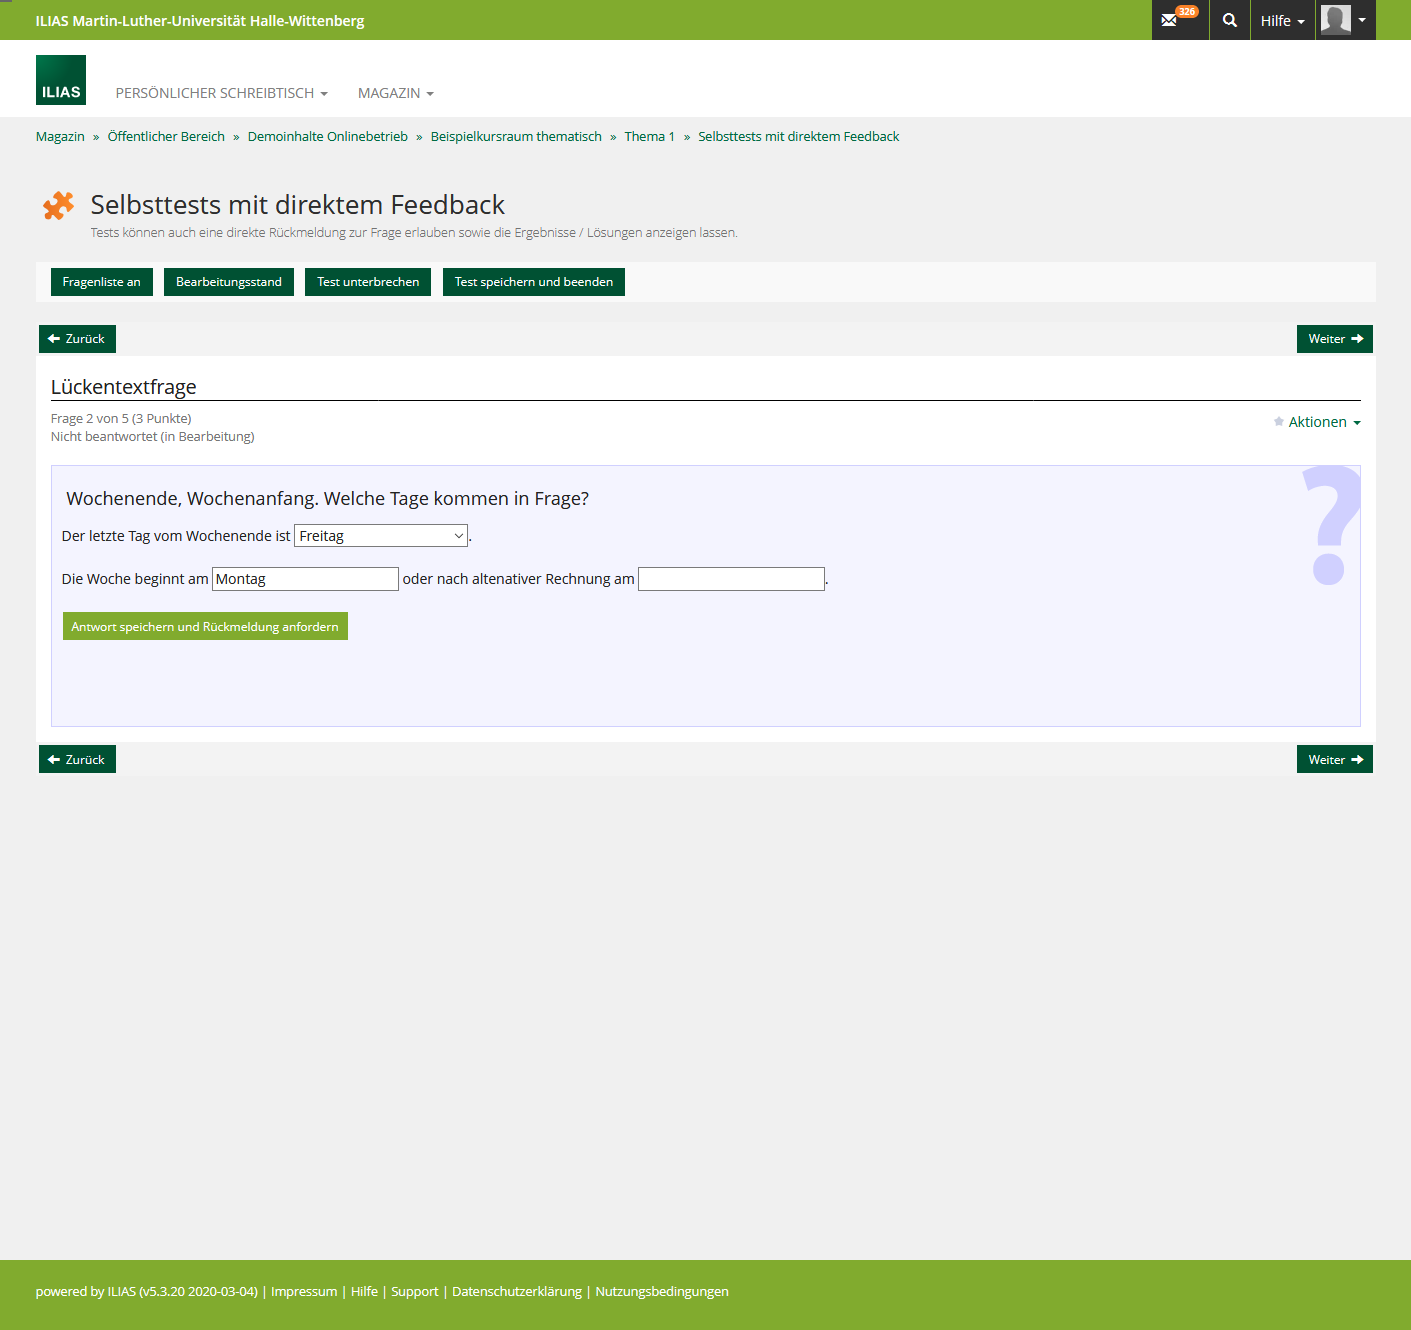 Screenshot 2020-03-19 ILIAS MLU - Selbsttests mit direktem Feedback.png